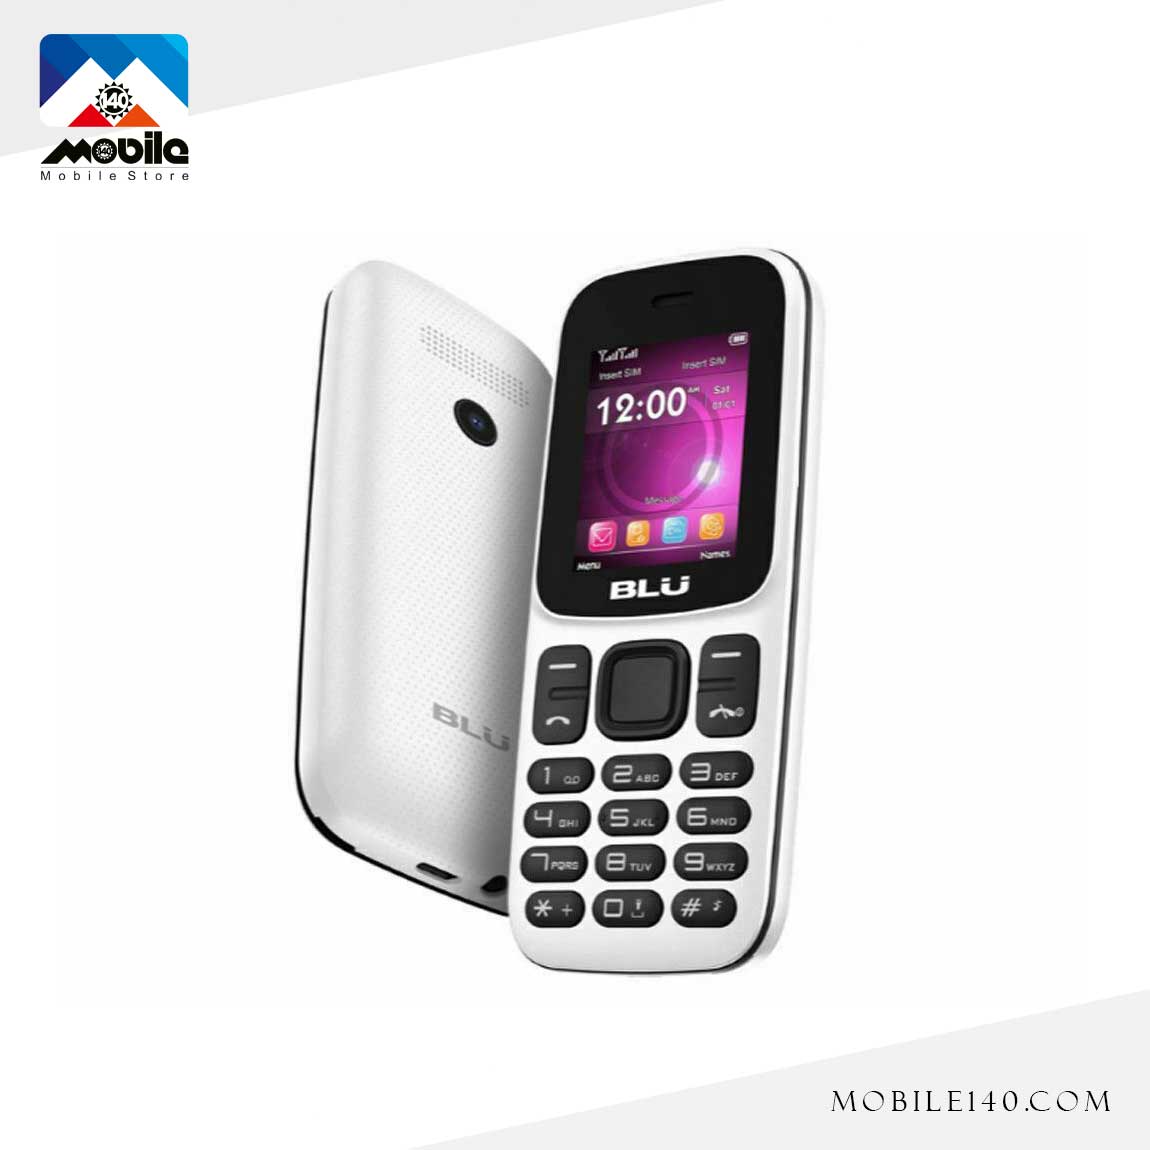 Blu Z5 Mobile Phone 3